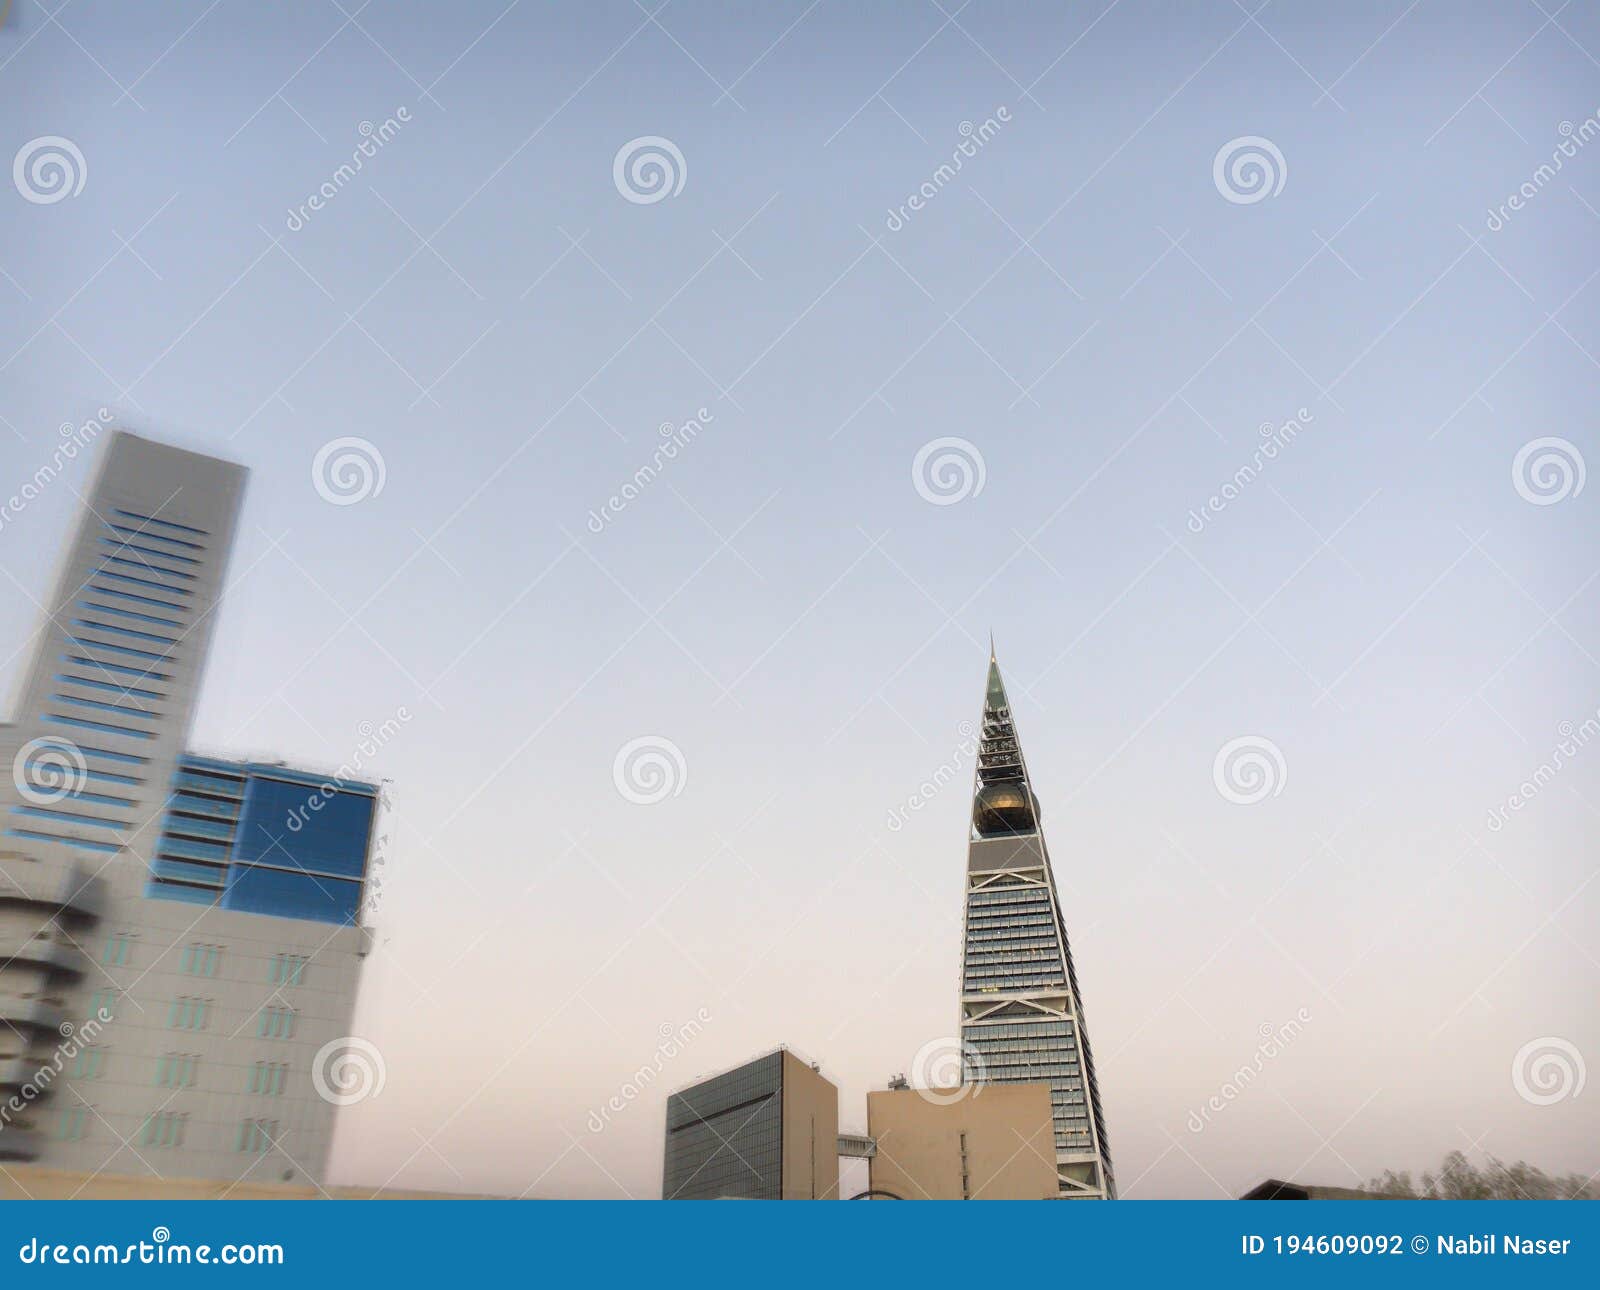 al faisaliah tower in riyadh | 26 august 2020